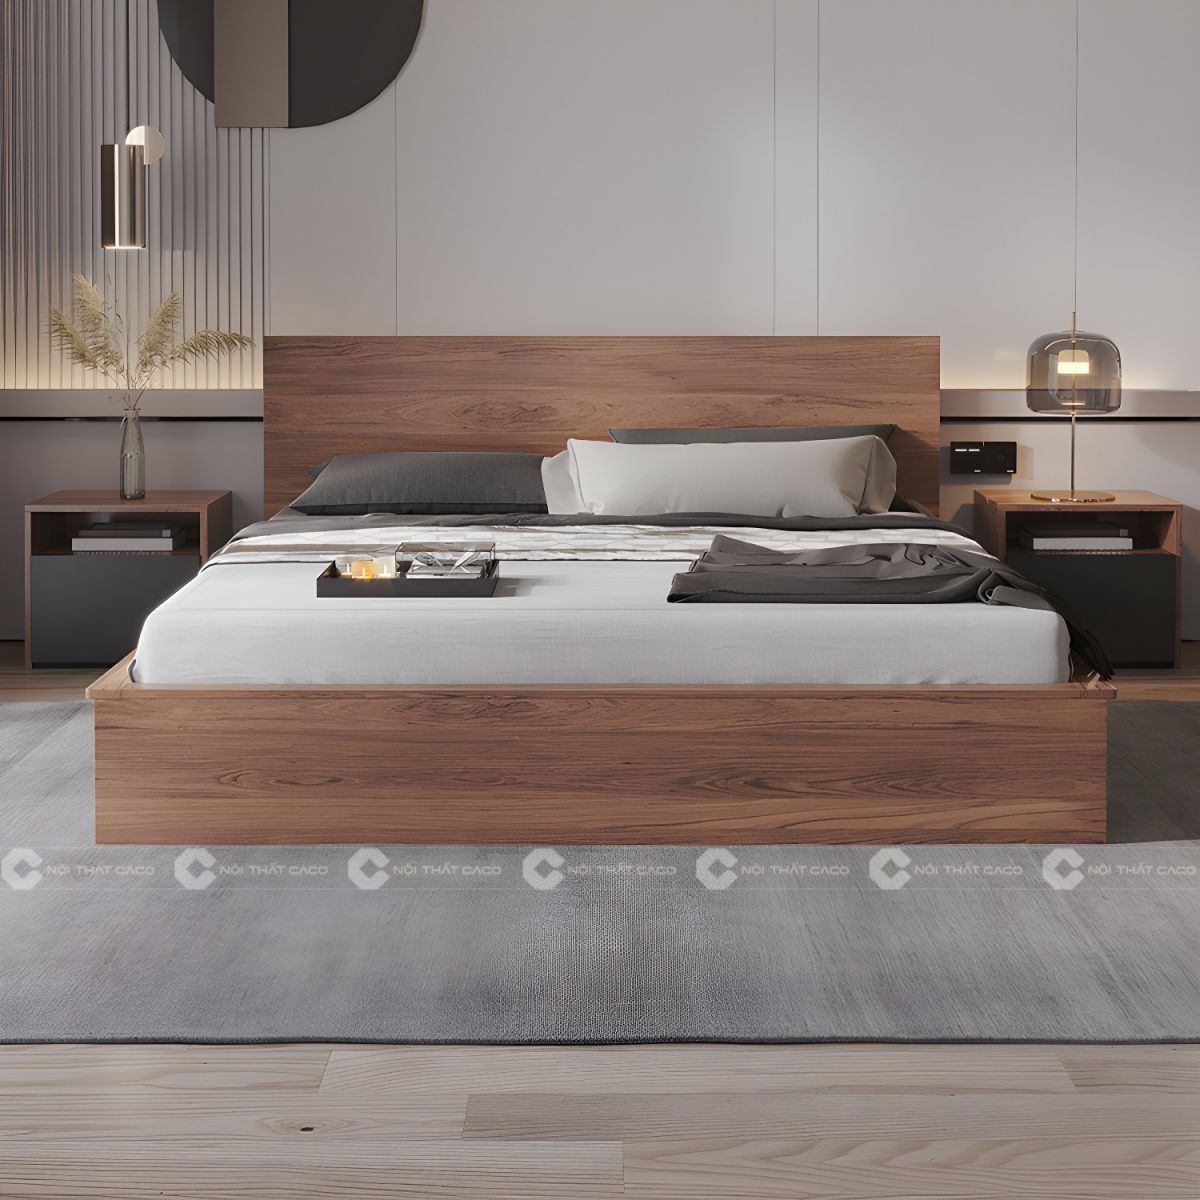 Giường ngủ gỗ công nghiệp sang trọng 